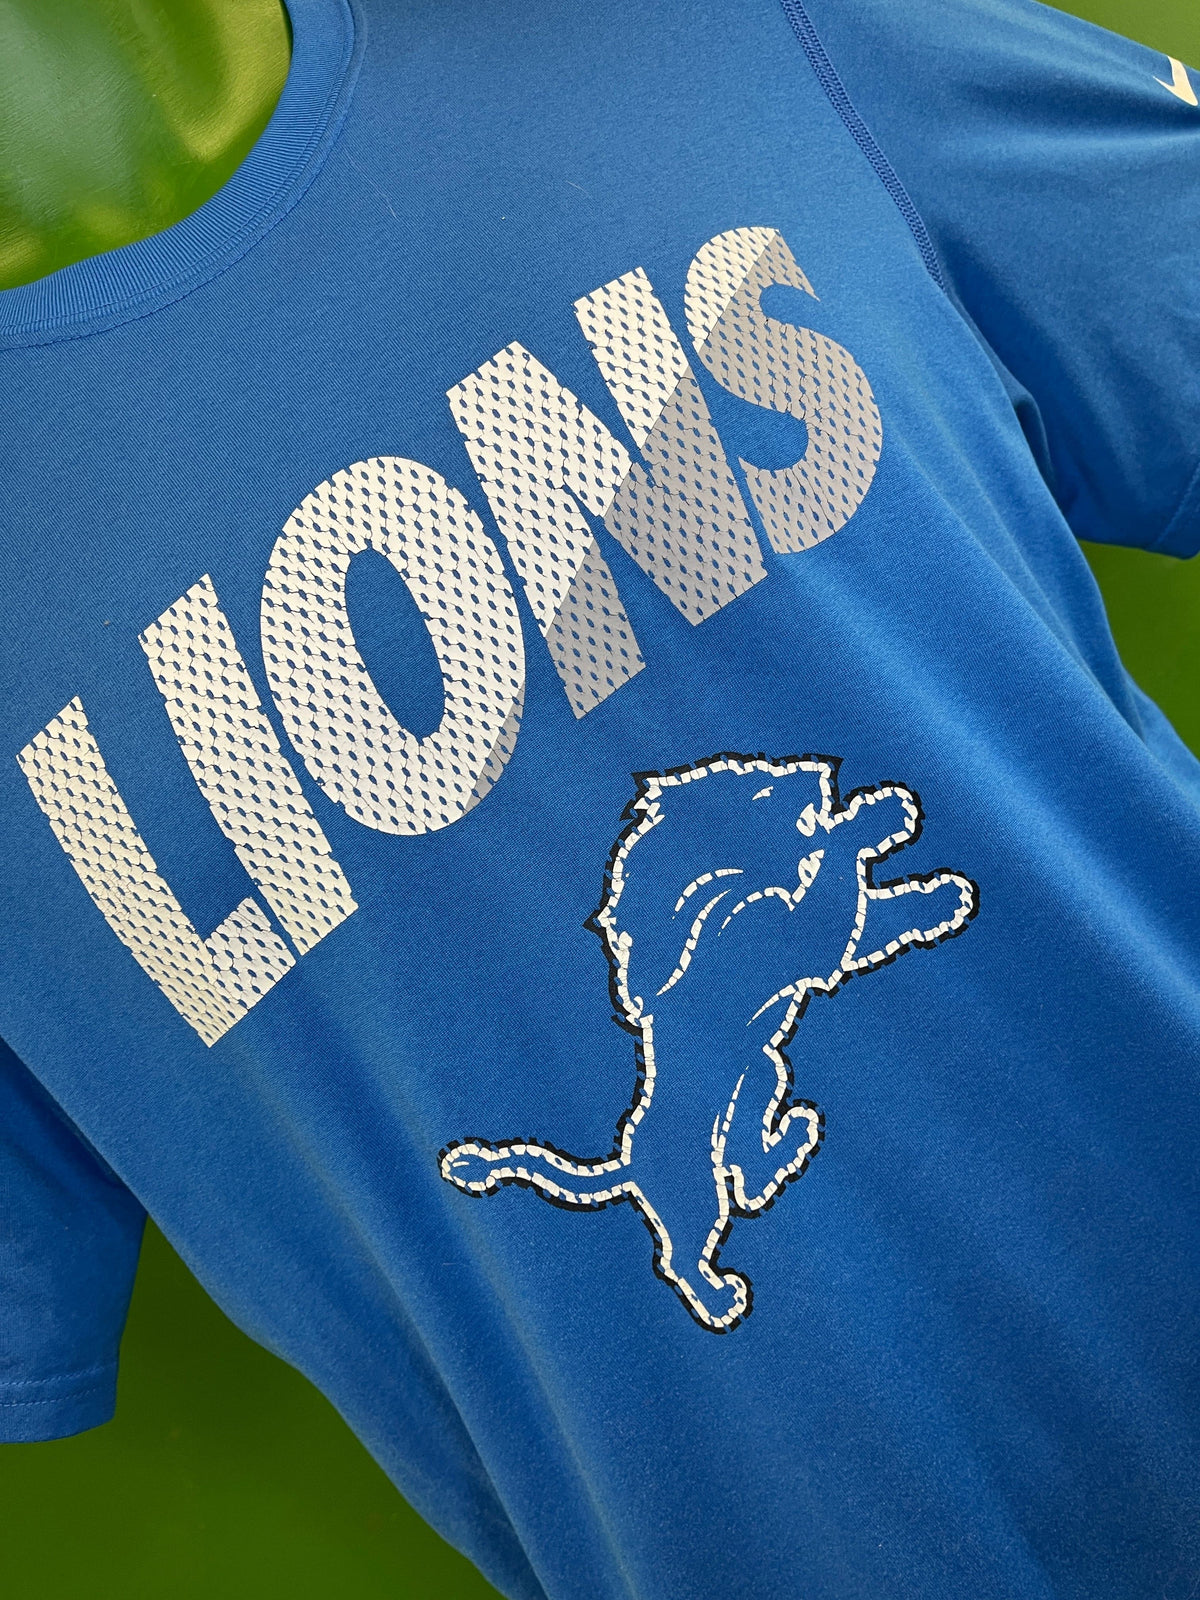 NFL Detroit Lions Quality T-Shirt Men's Small